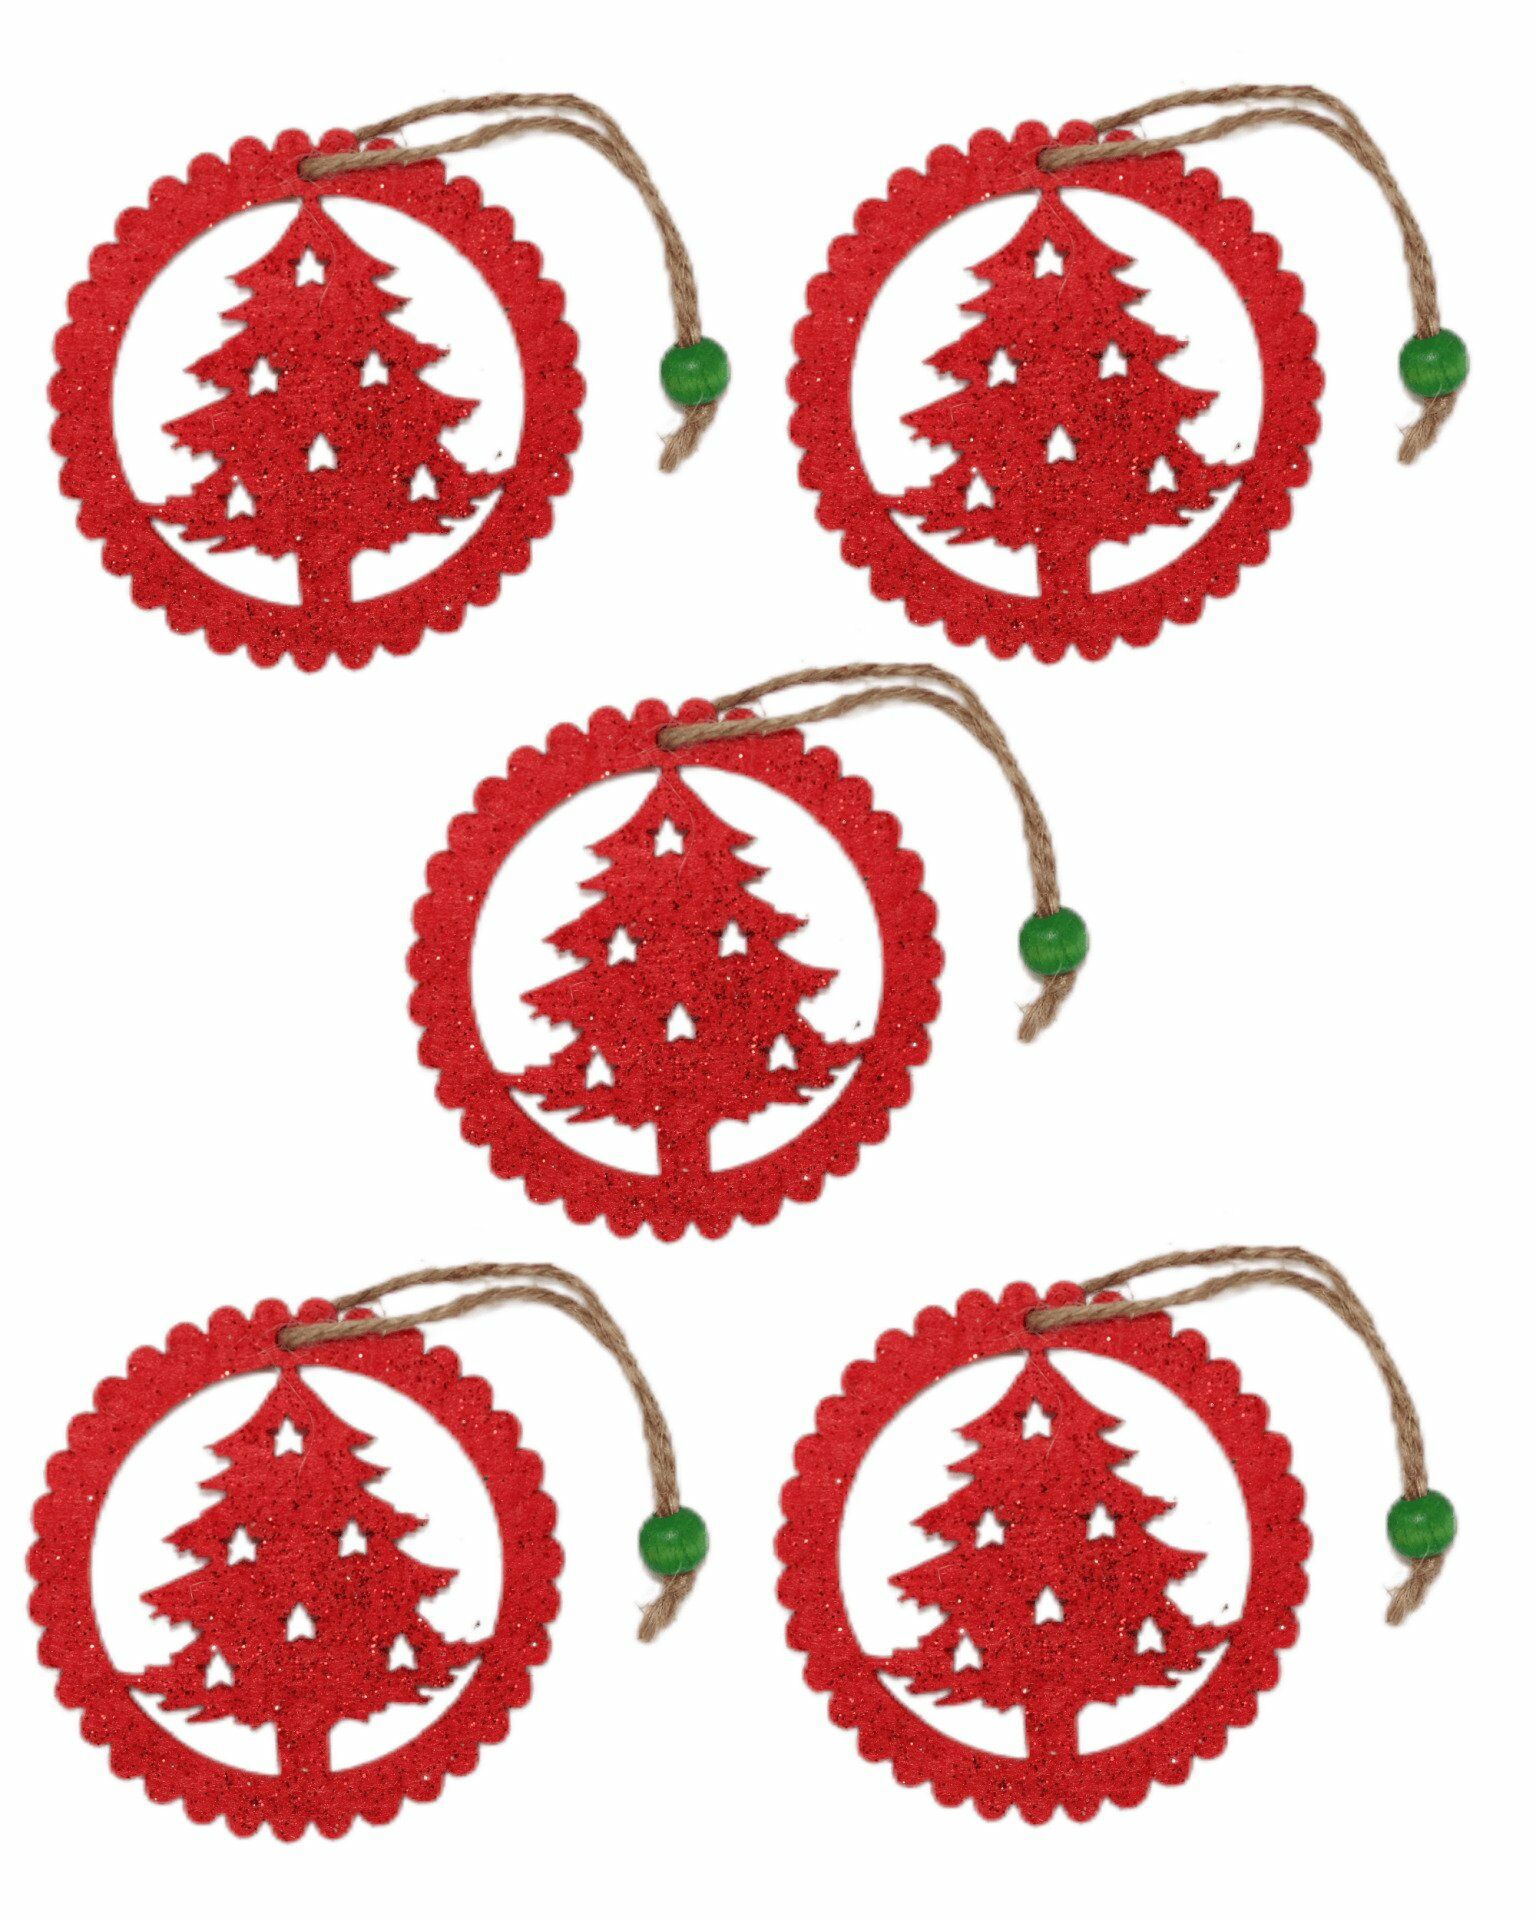 ROCO PAPER CO. - Yılbaşı Ağacı Süsleme Seti - (Simli Keçe Hediye Paketi Süsü) - 5 Adet 8 cm ÇÇ001 Kırmızı Renk